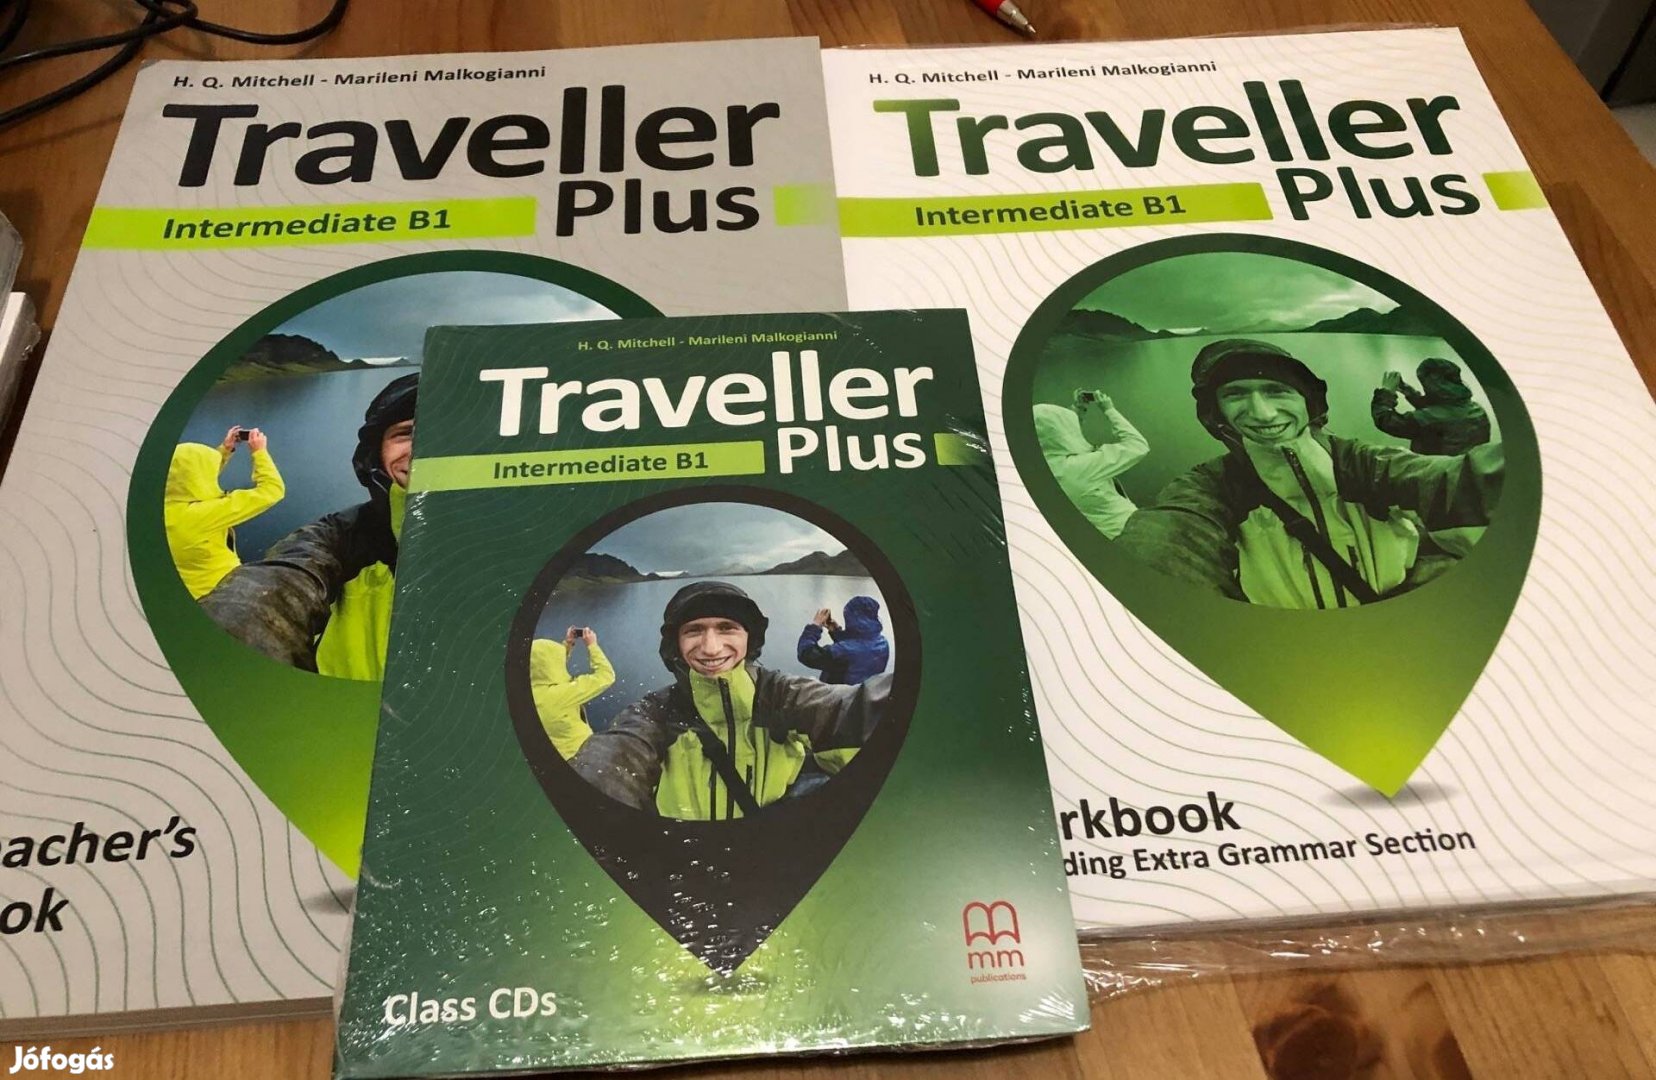 Traveller Plus Intermediate B1 tanulói csomag